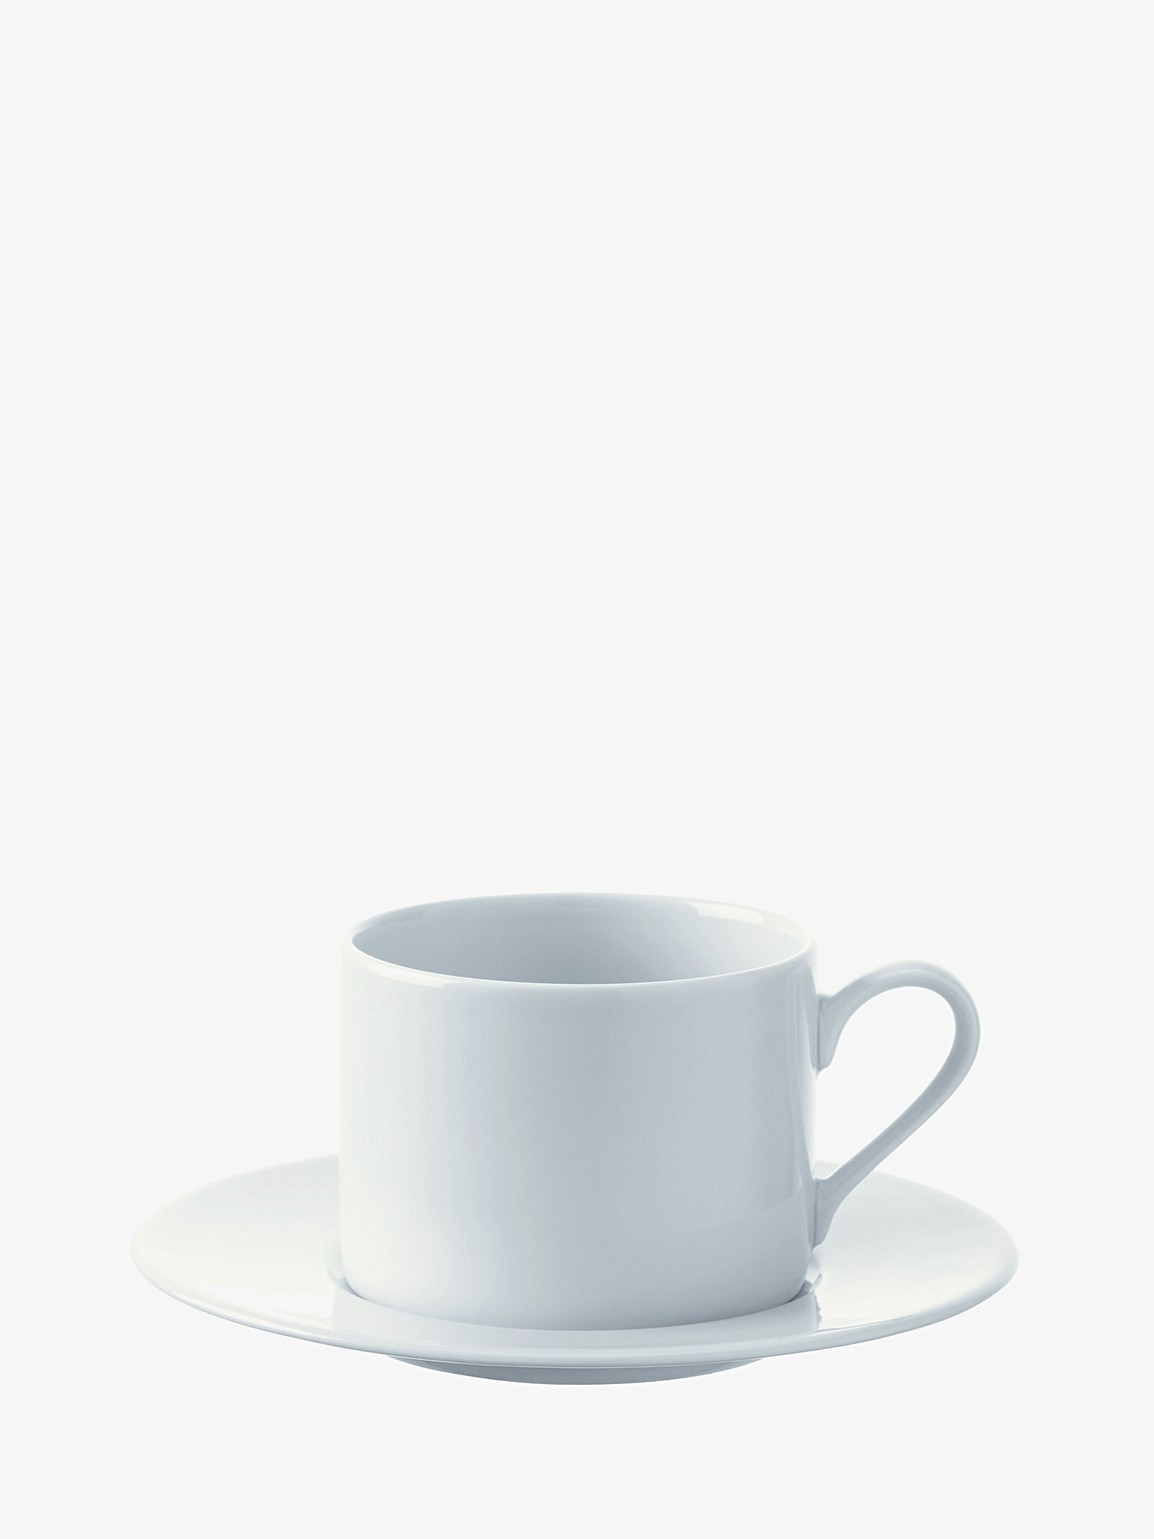 Dine Tea/Coffee Cup x 4 250ml